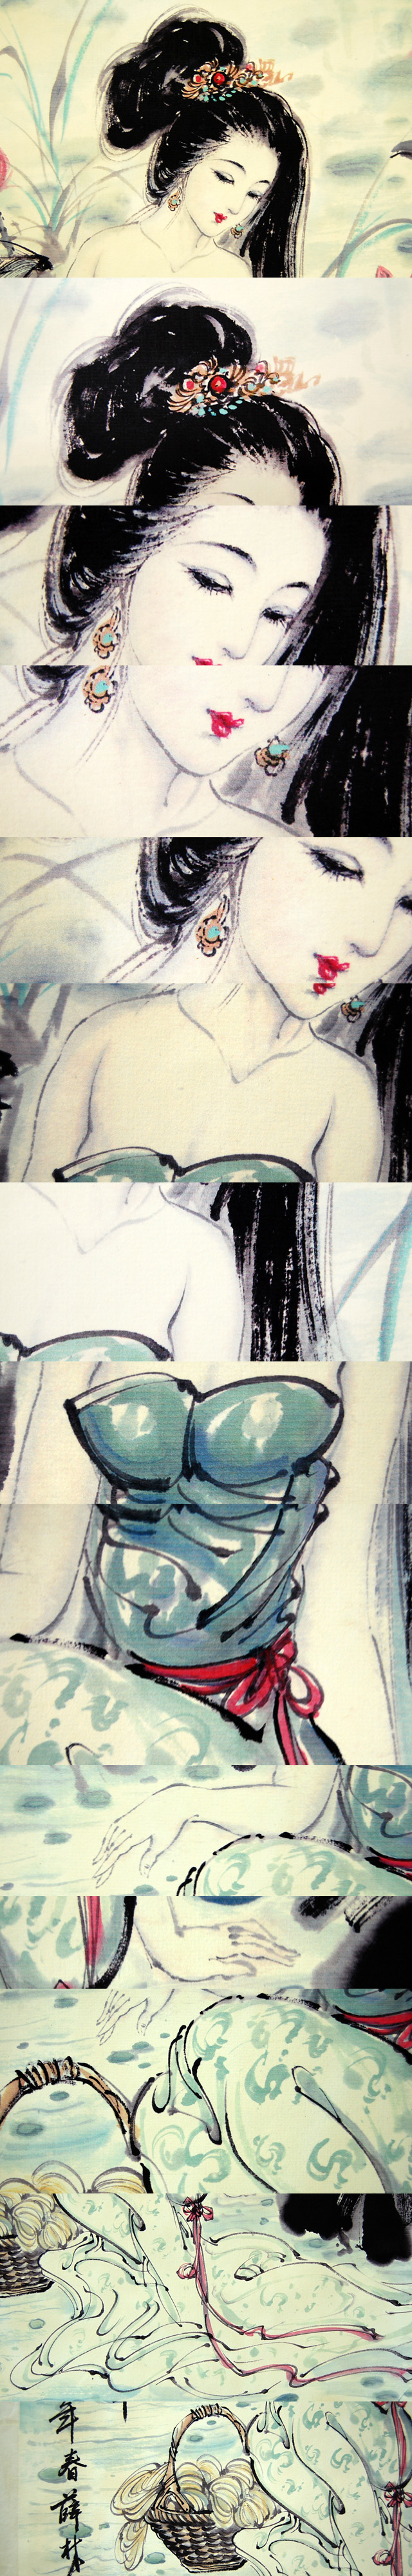 【低価NEW】F20384 中国美術 薛林興「浣紗渓畔」美人画 裸婦画 掛軸 紙本 彩色 工芸 中国名家 近代画家 掛軸